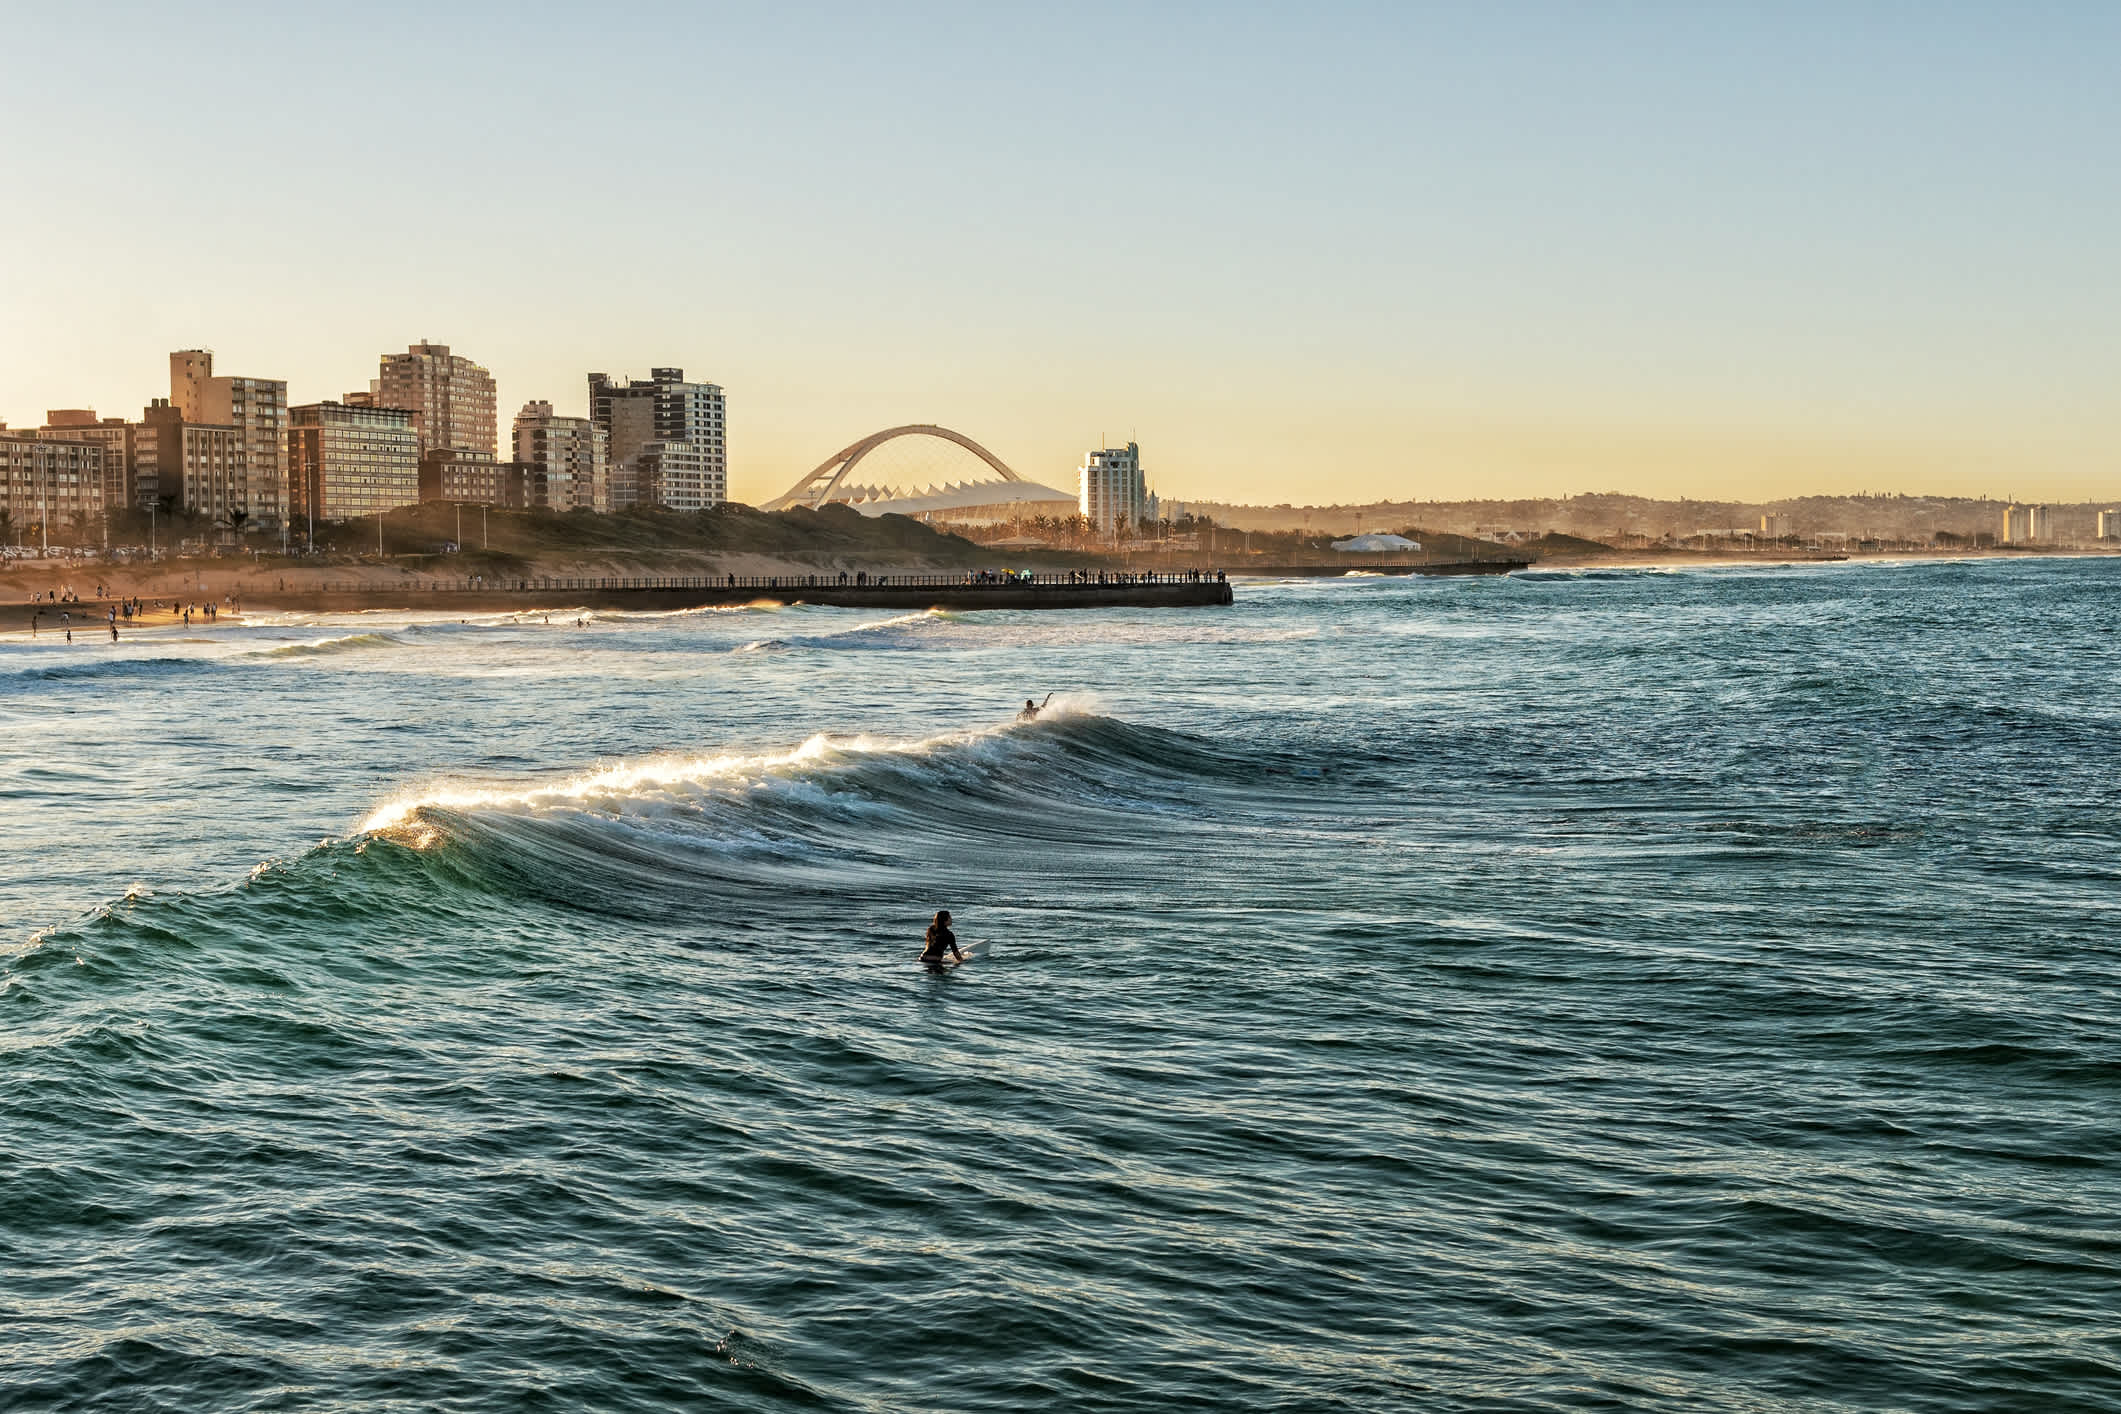 Beach Surfers in Durban - Stadt in Südafrika mit tollen Bade- und Surfmöglichkeiten.